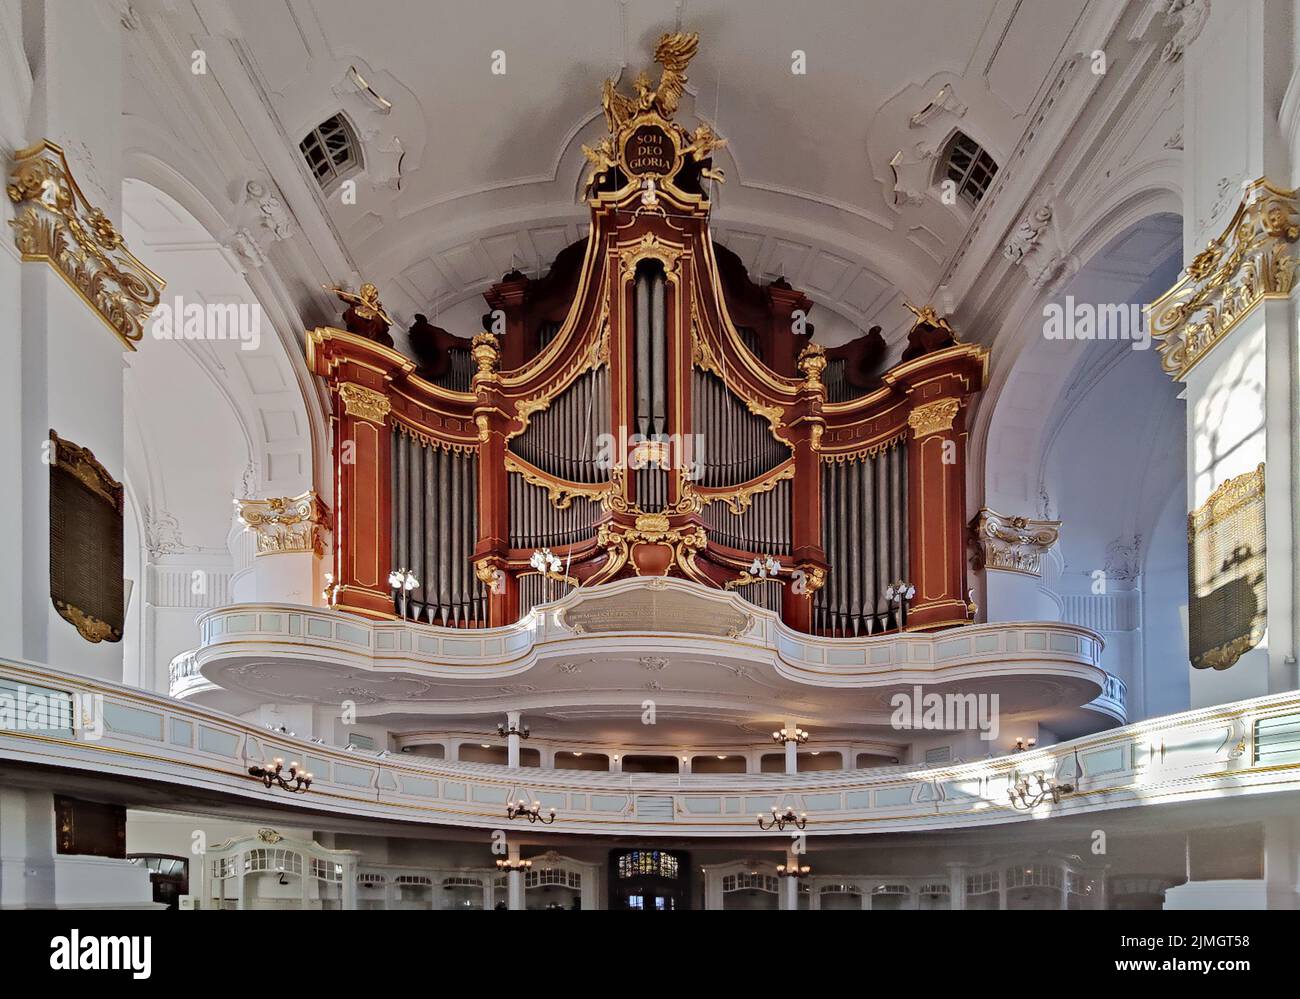 Órgano principal en la iglesia principal de San Michaelis, llamado Michel, Hamburgo, Alemania, Europa Foto de stock